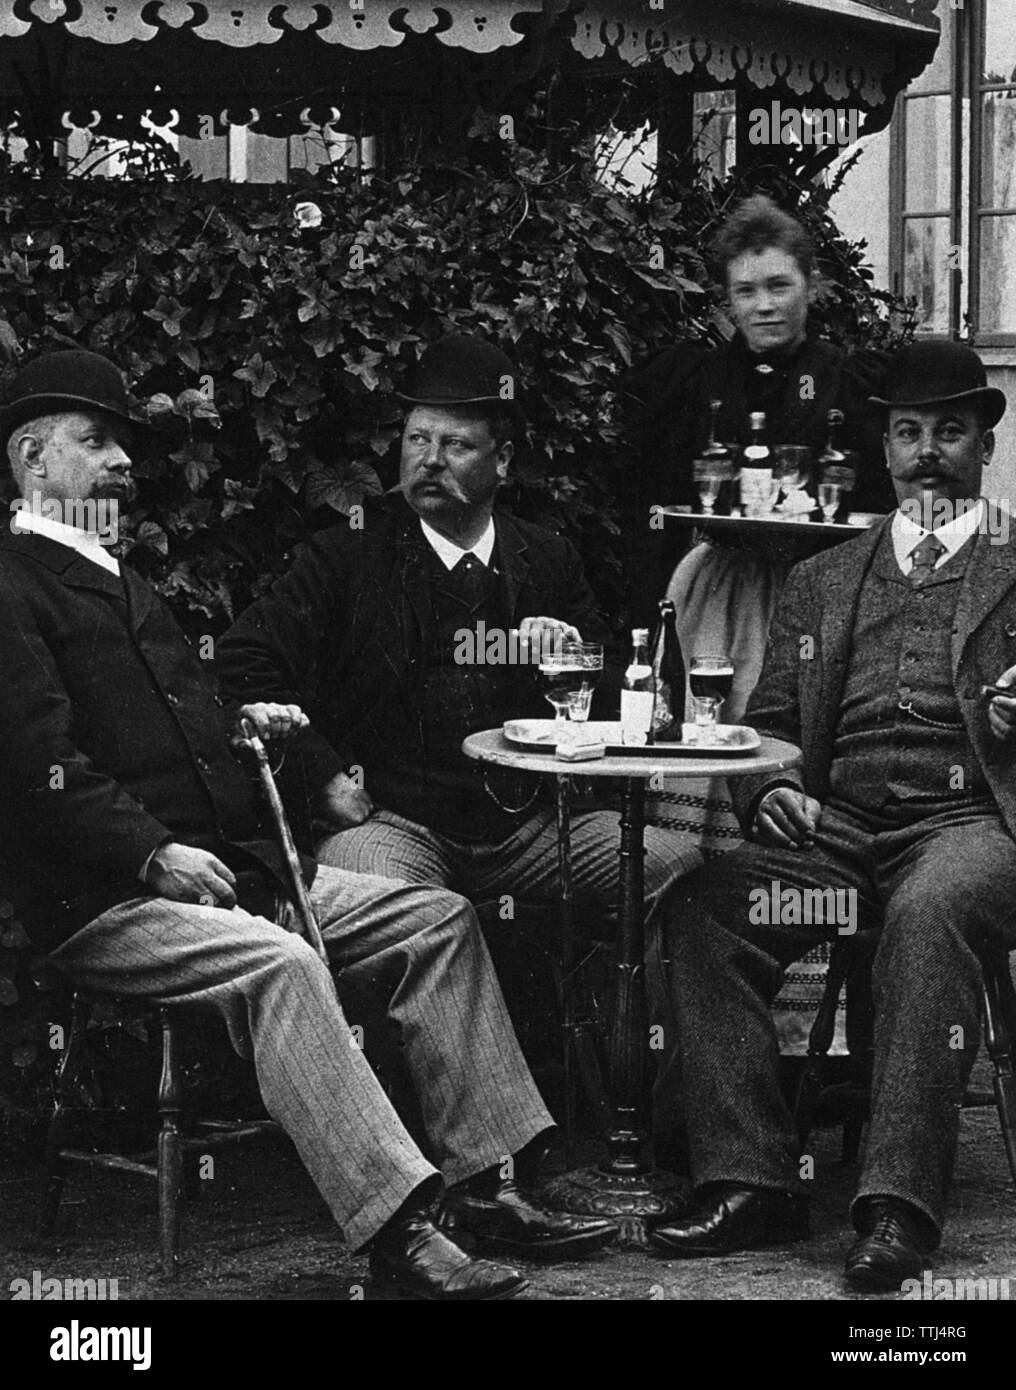 Männer lifestyle am Anfang des 20. Jahrhunderts. Drei Männer sitzen an einem Tisch in einem Restaurant bei einem Glas Bier. Sie sind alle drei in der Regel gut gekleidet und Hüte sind auf. Schweden 1800-1900 BV 67-3 Stockfoto